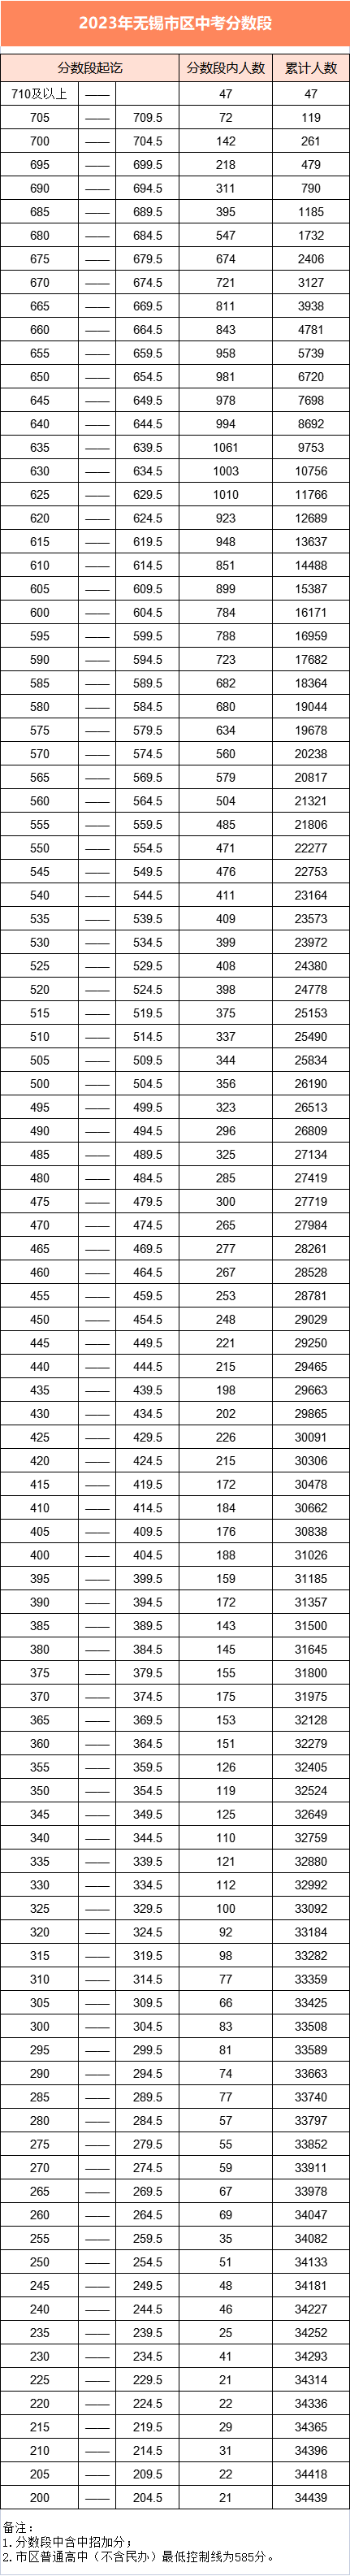 2023年无锡中考分数段统计表 中考成绩排名